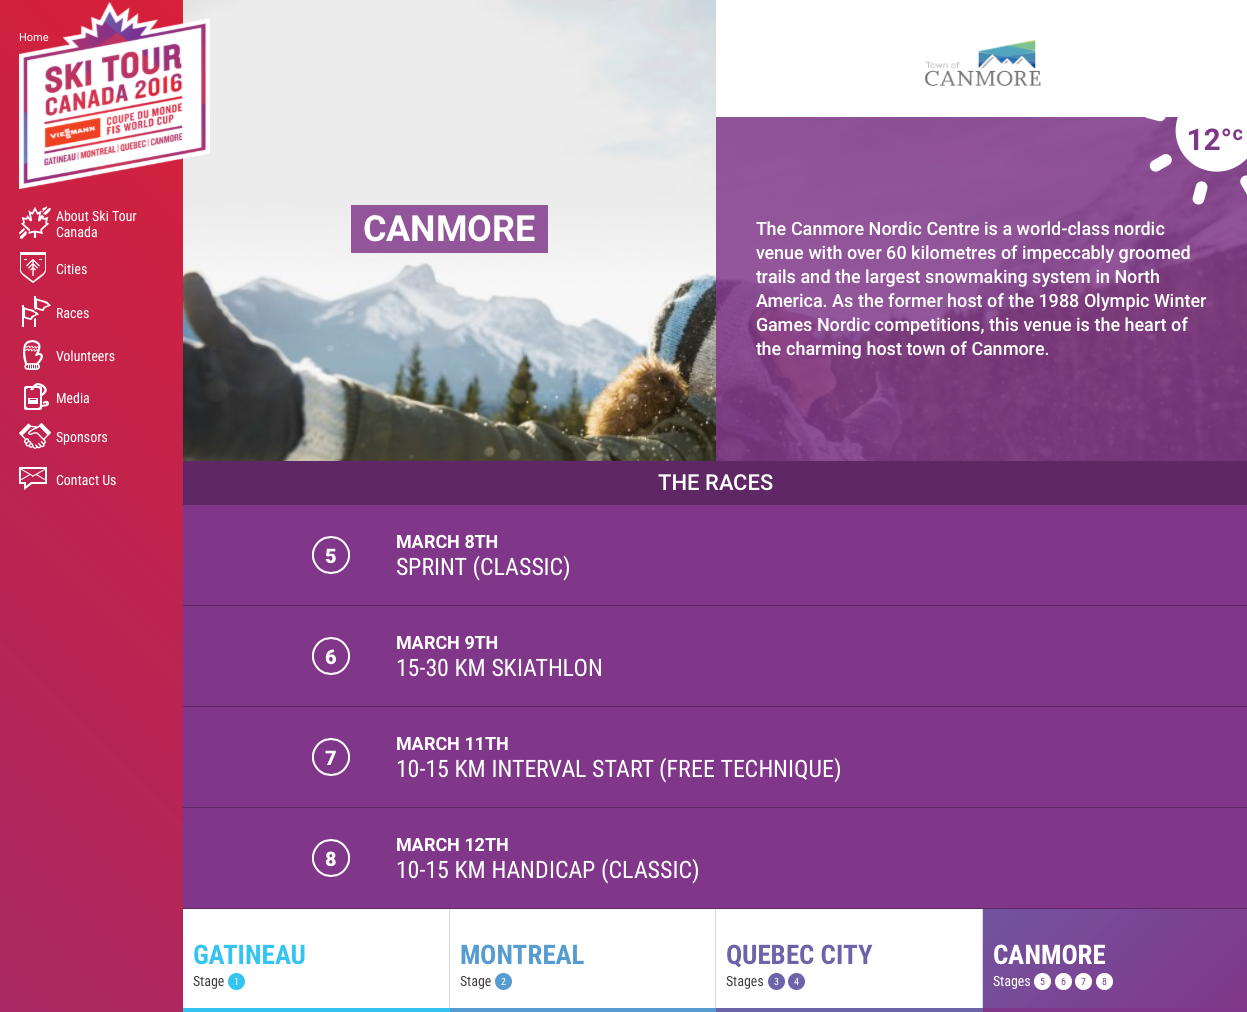 Le Ski Tour Canada 2016 dévoile son site web !